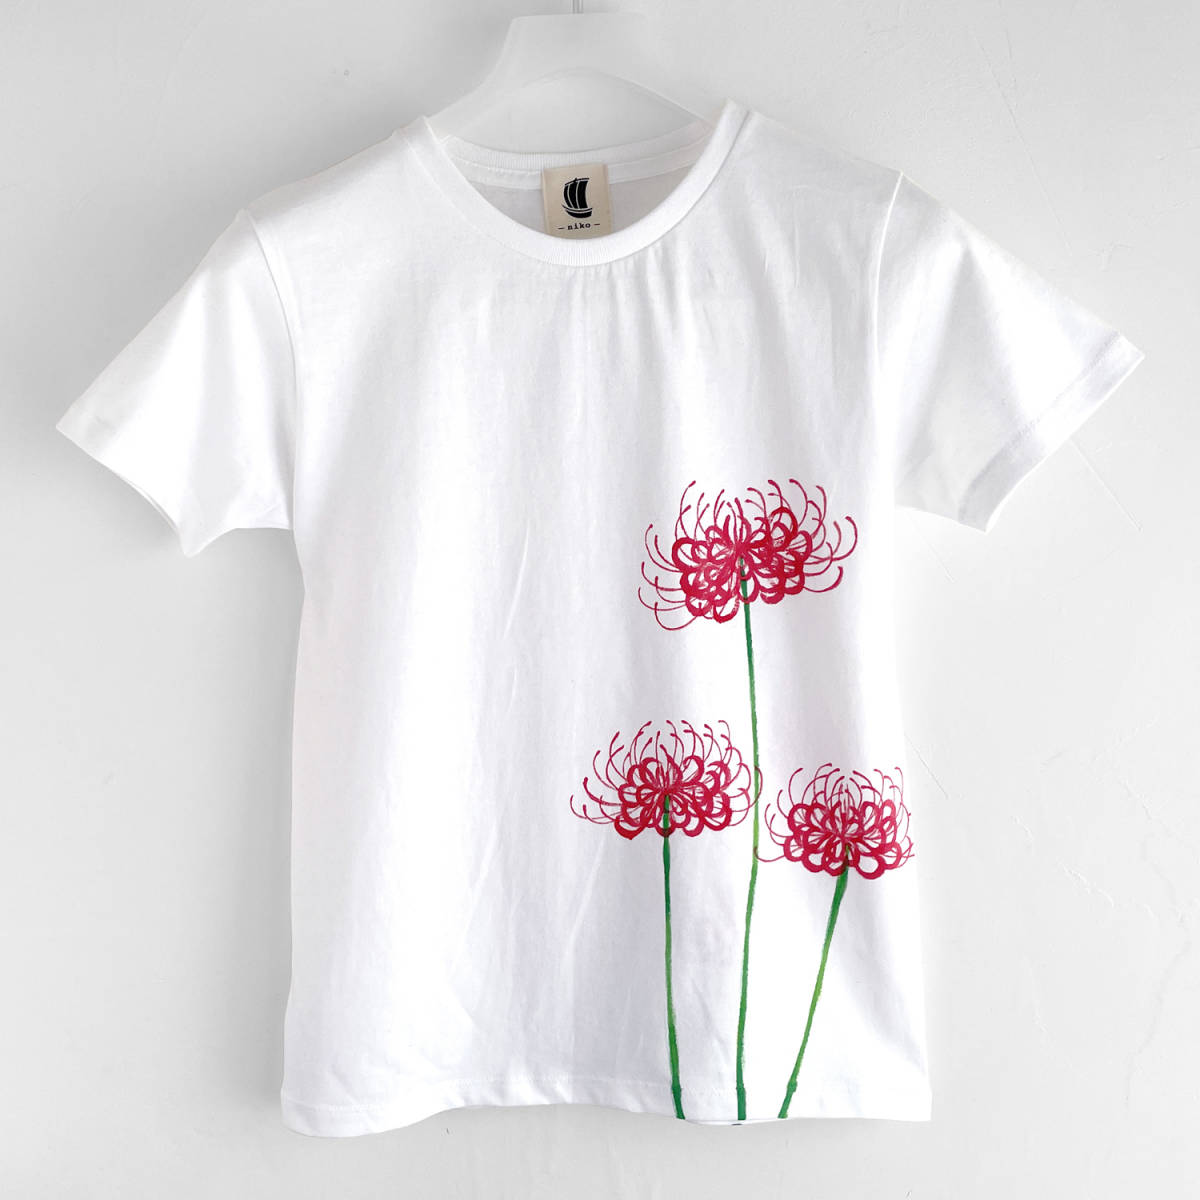 Женская футболка, Размер L, белый, красная футболка с узором в виде паучьих лилий, ручной работы, футболка с ручной росписью, Японский узор, цветочный узор, осень зима, Размер L, круглая шея, узорчатый